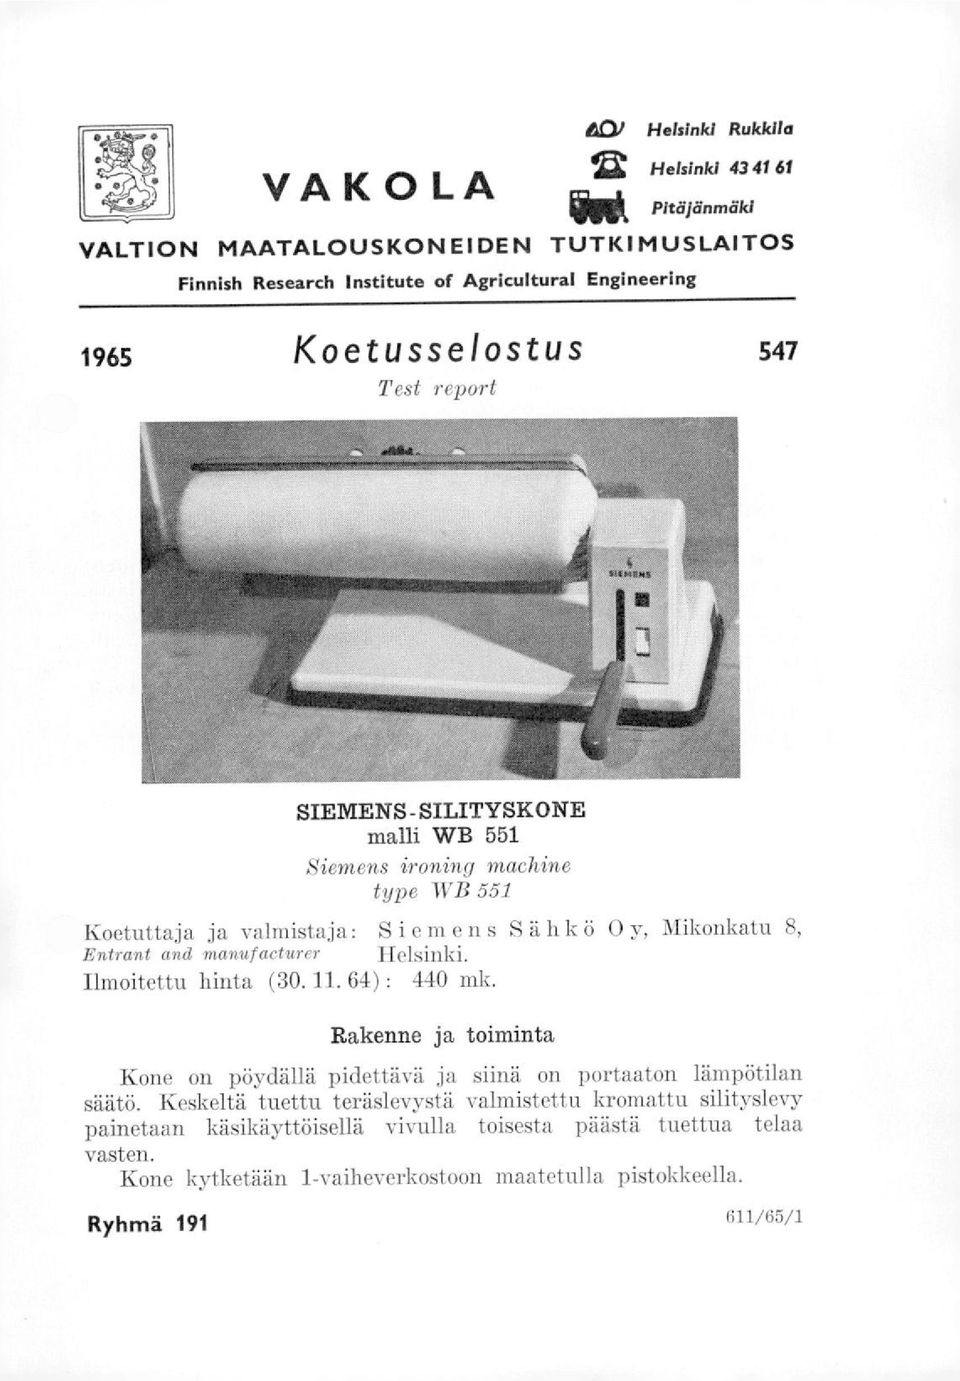 manufactwrer Helsinki. lmoitettu hinta (30. 11. 64) : 440 mk. Rakenne ja toiminta Kone on pöydällä pidettävä ja siinä on portaaton lämpötilan säätö.